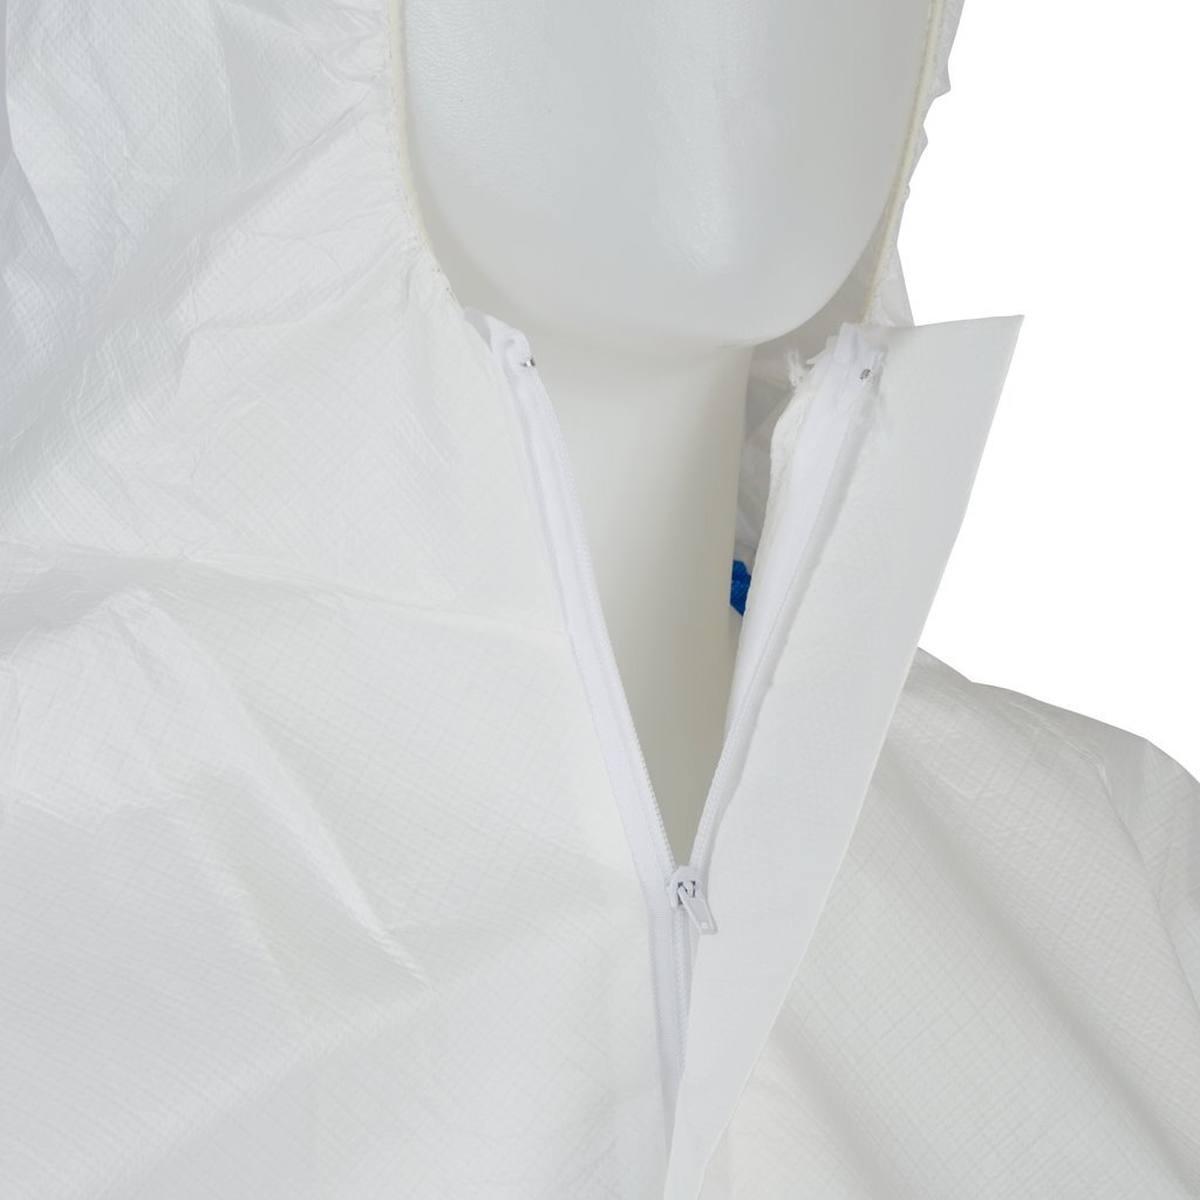 Tuta 3M 4535, bianco blu, TIPO 5/6, taglia XL, materiale SMMMS e PE, traspirante, cerniera che può essere chiusa con nastro adesivo, polsini in maglia